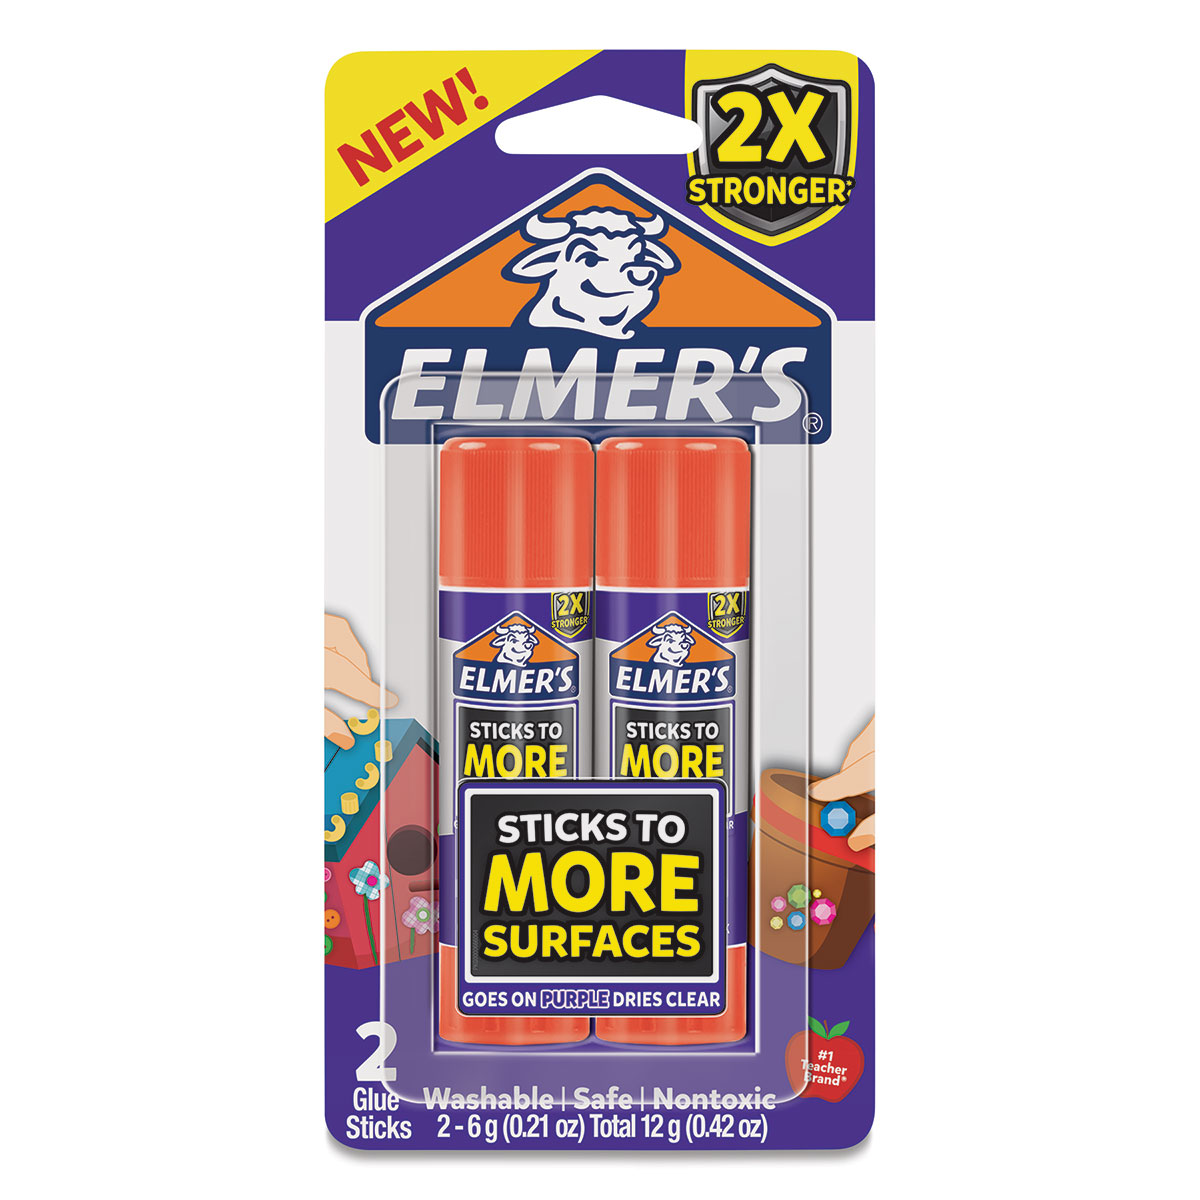 Elmer's - Craft Bond Extra-Strength Glue Stick